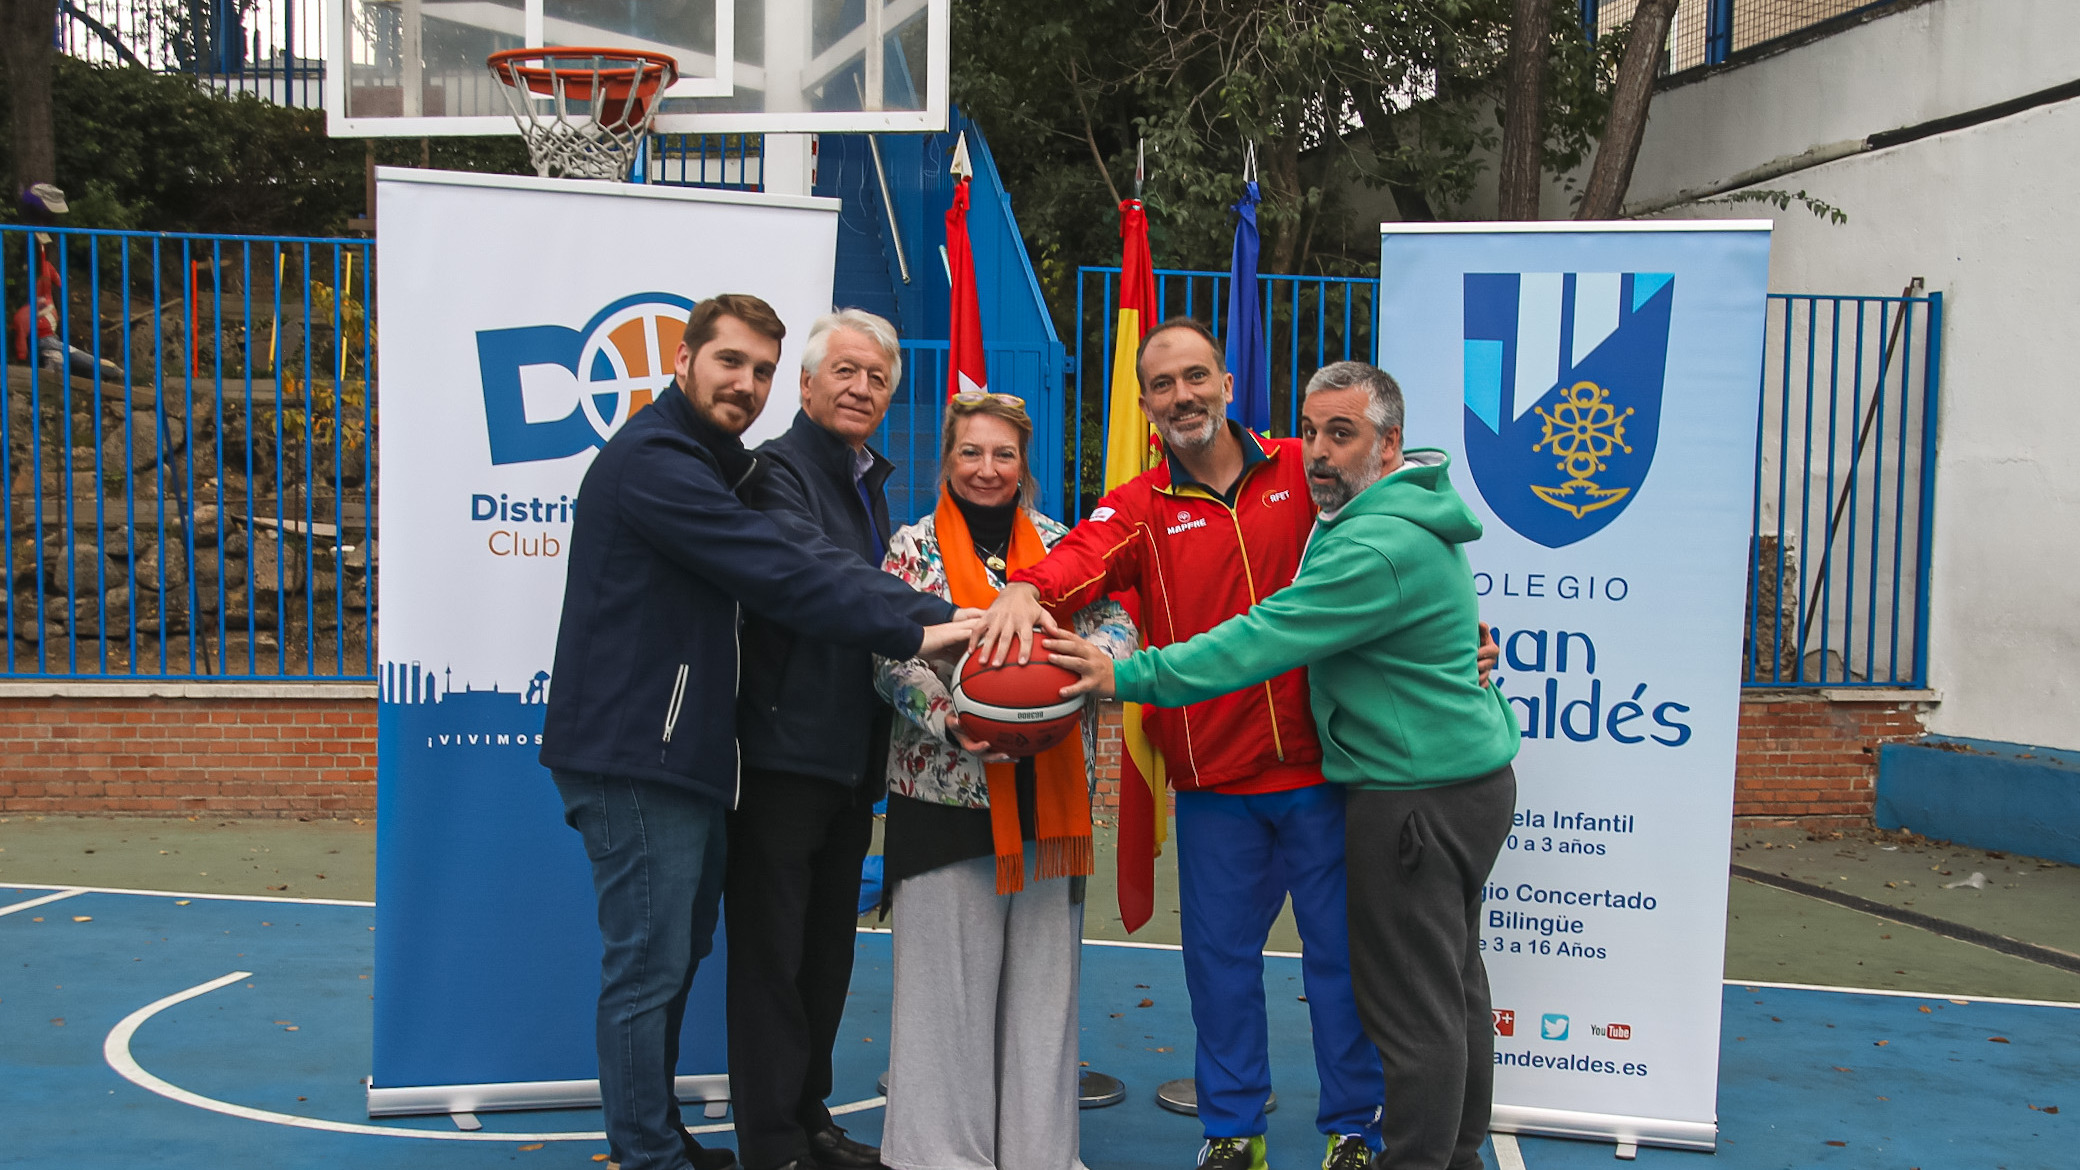 Distrito Olímpico y el colegio Juan de Valdés unen fuerzas en su apuesta por el baloncesto